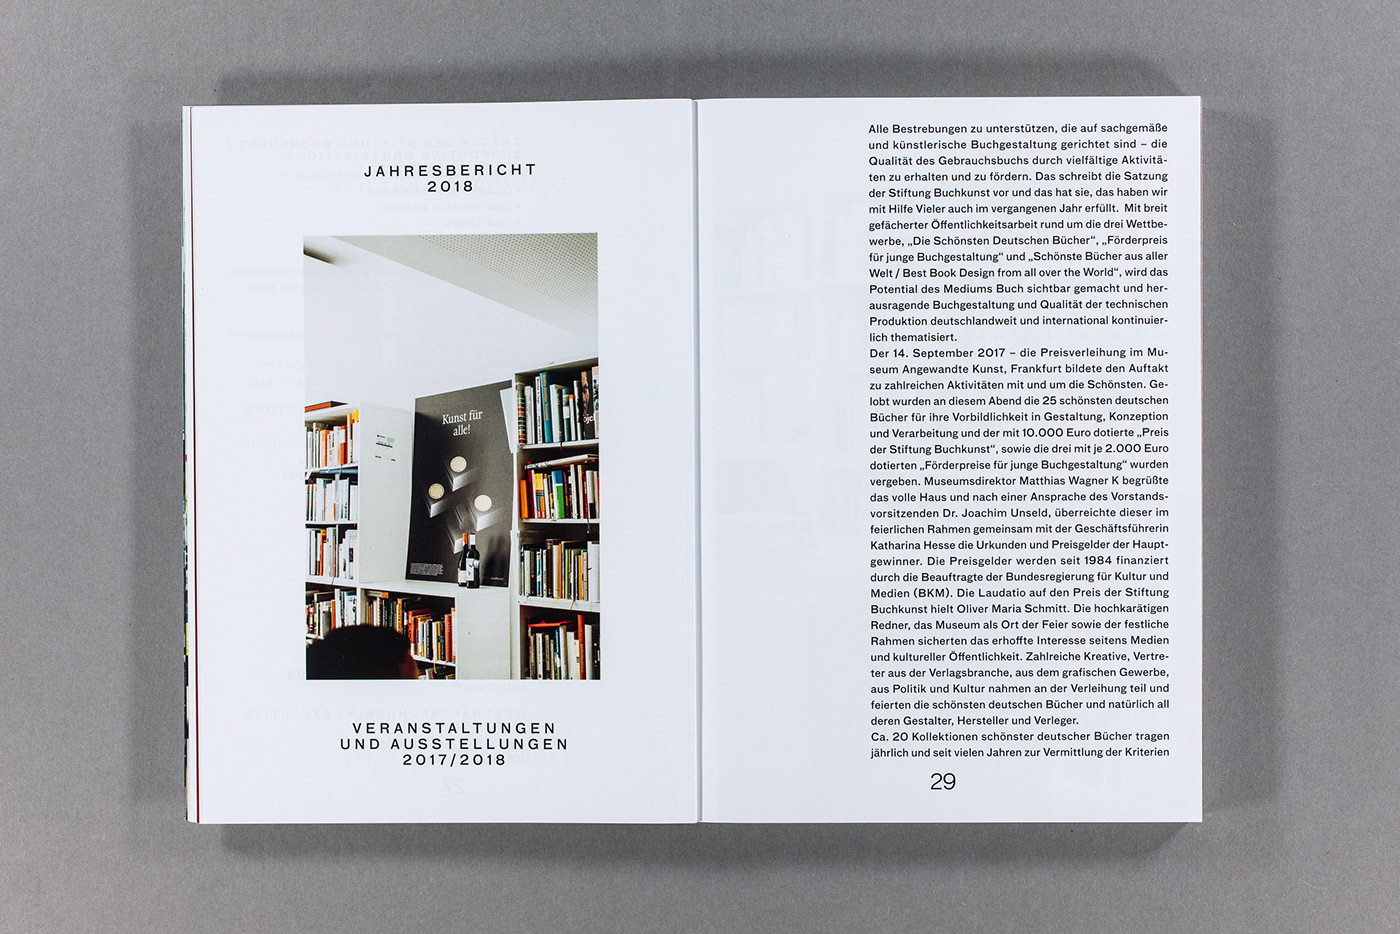 book design cover design book design graphic design  typography   photo book Photography  best book design Schönsten Deutschen Bücher